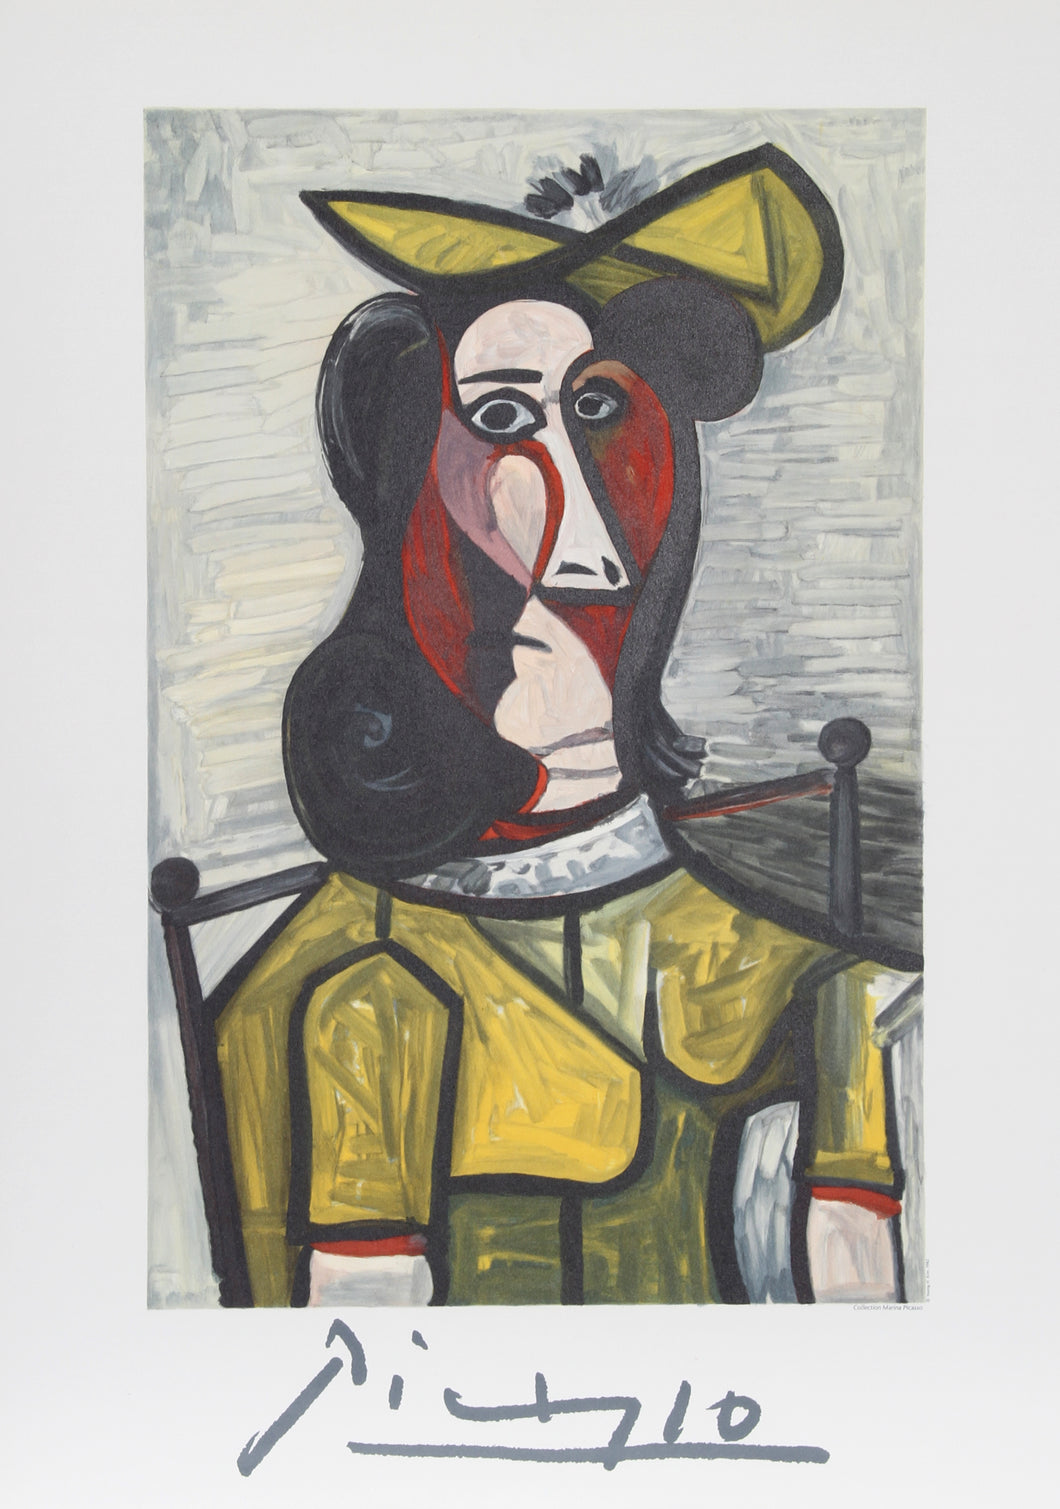 Pablo Picasso, Portrait de Femme au Chapeau et a la Robe Vert Jaune, 5-A-k, Lithograph